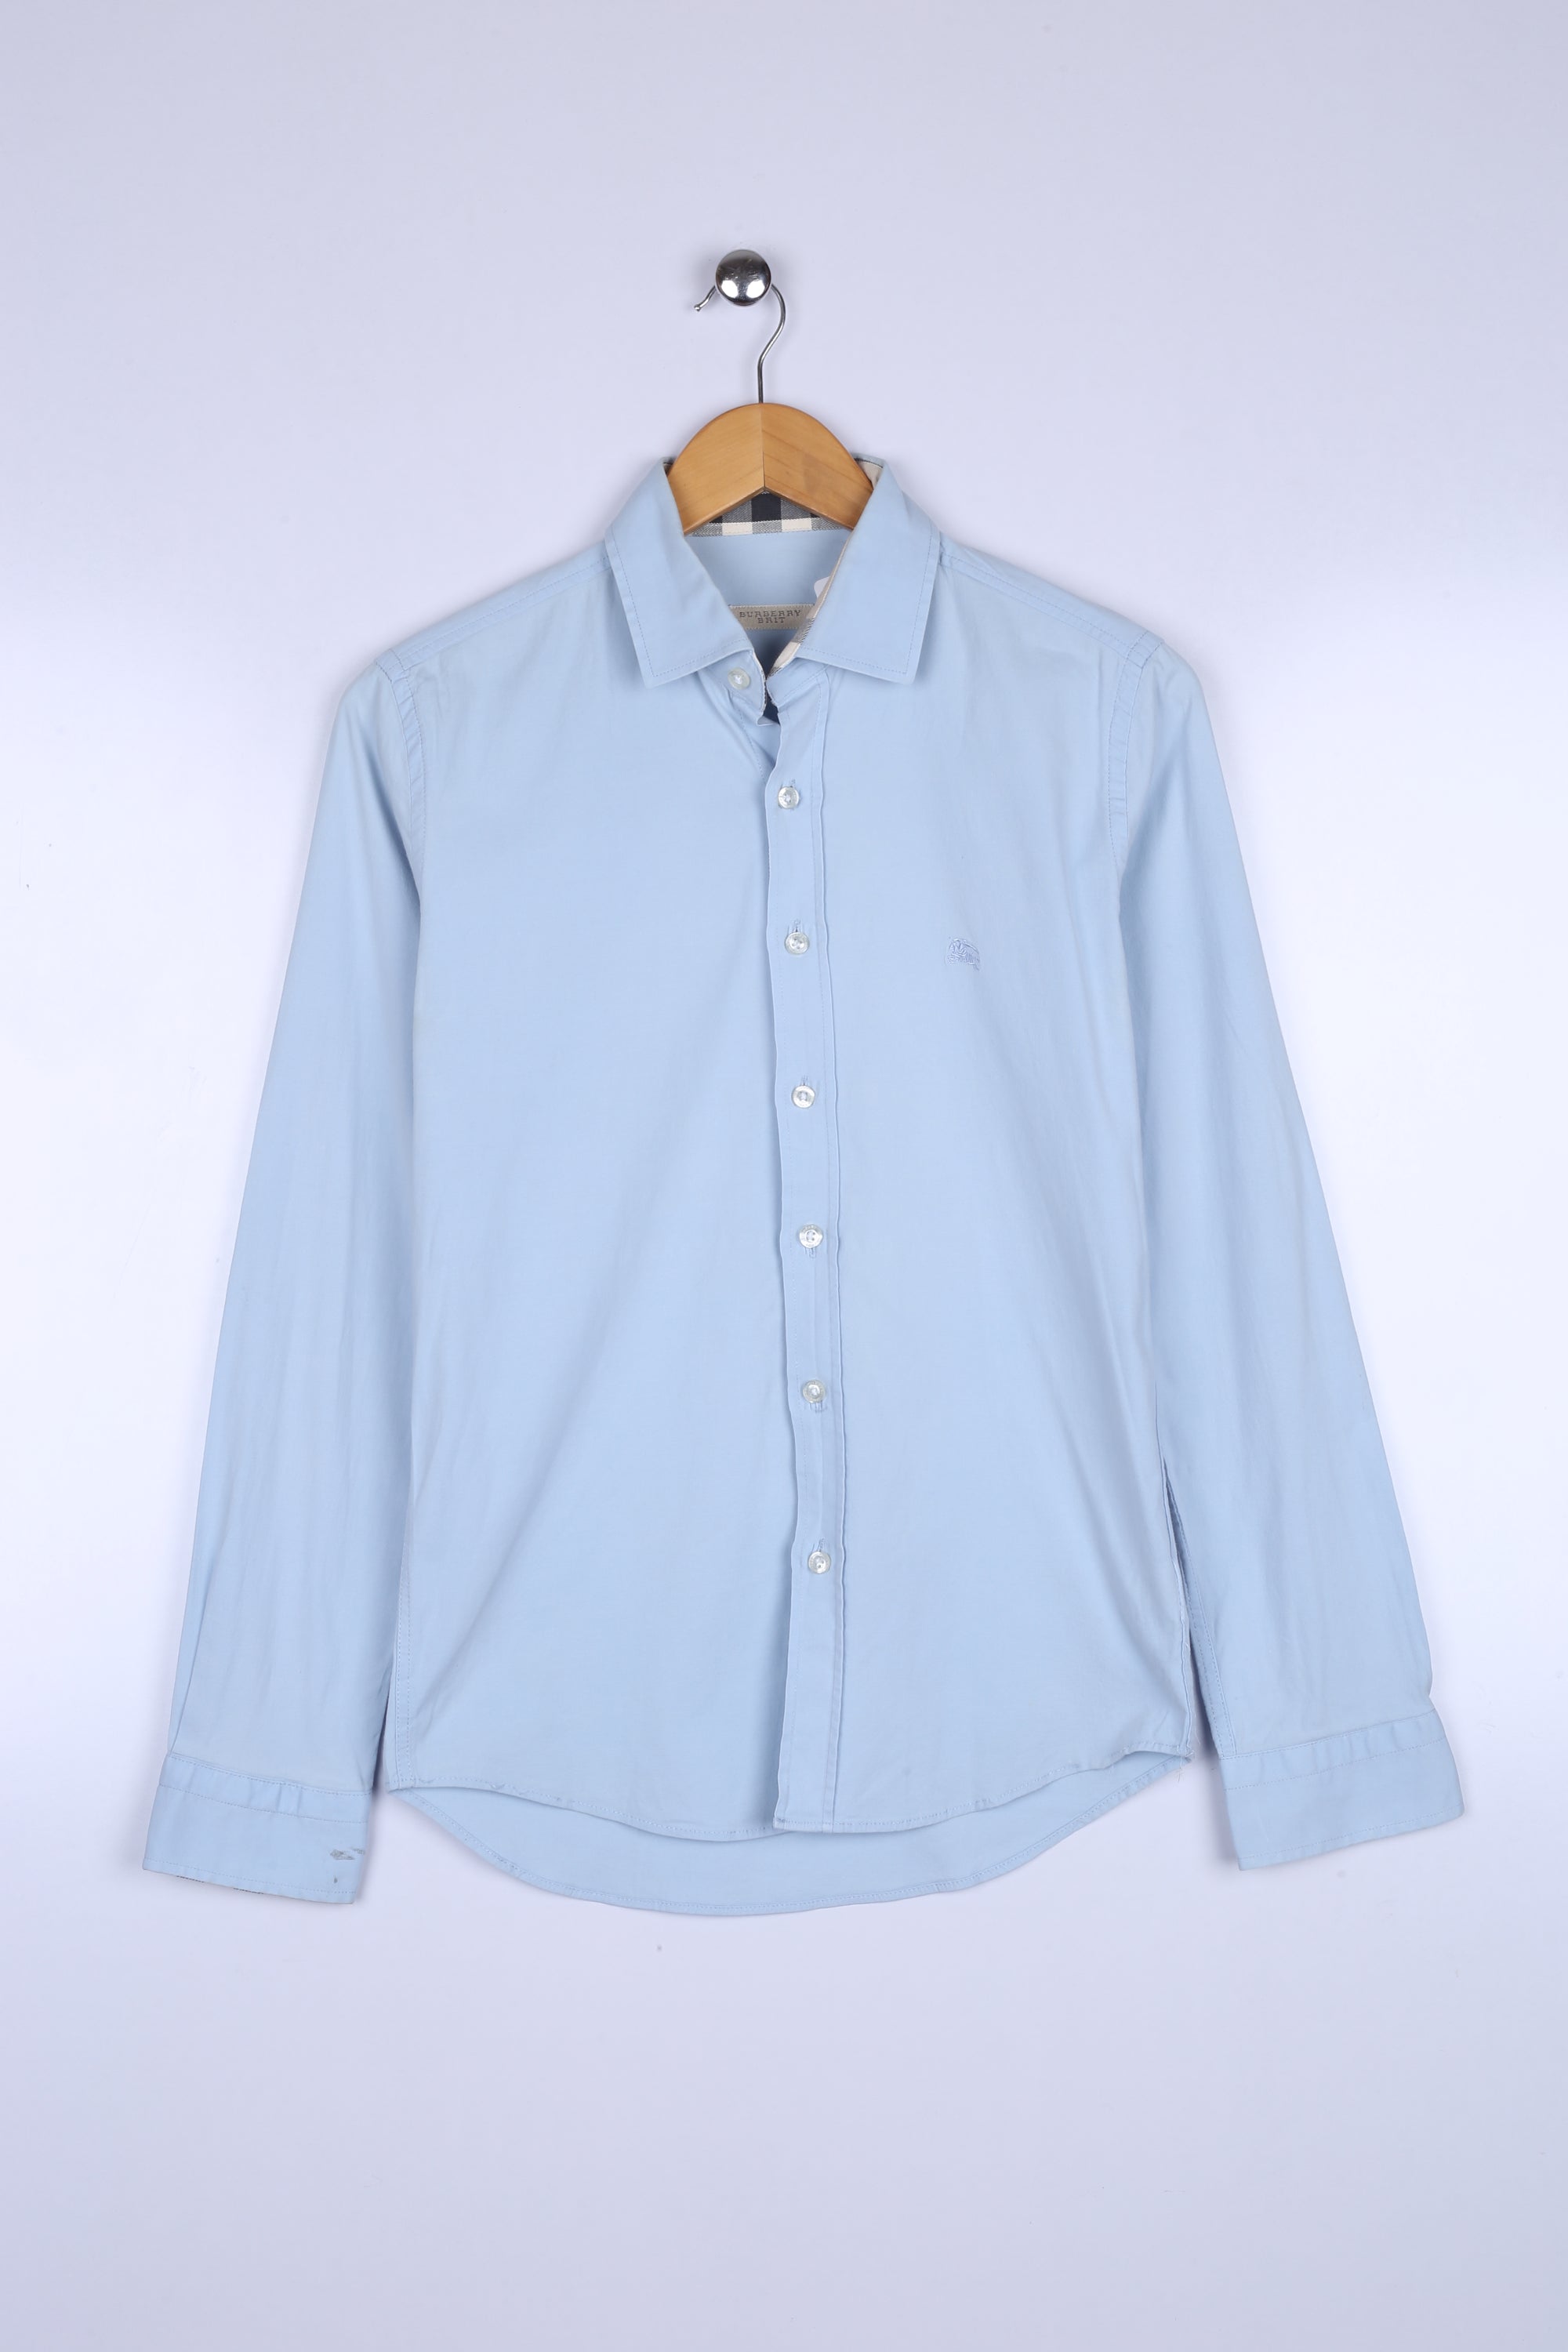 Vintage Burberry Shirt Sky Blue